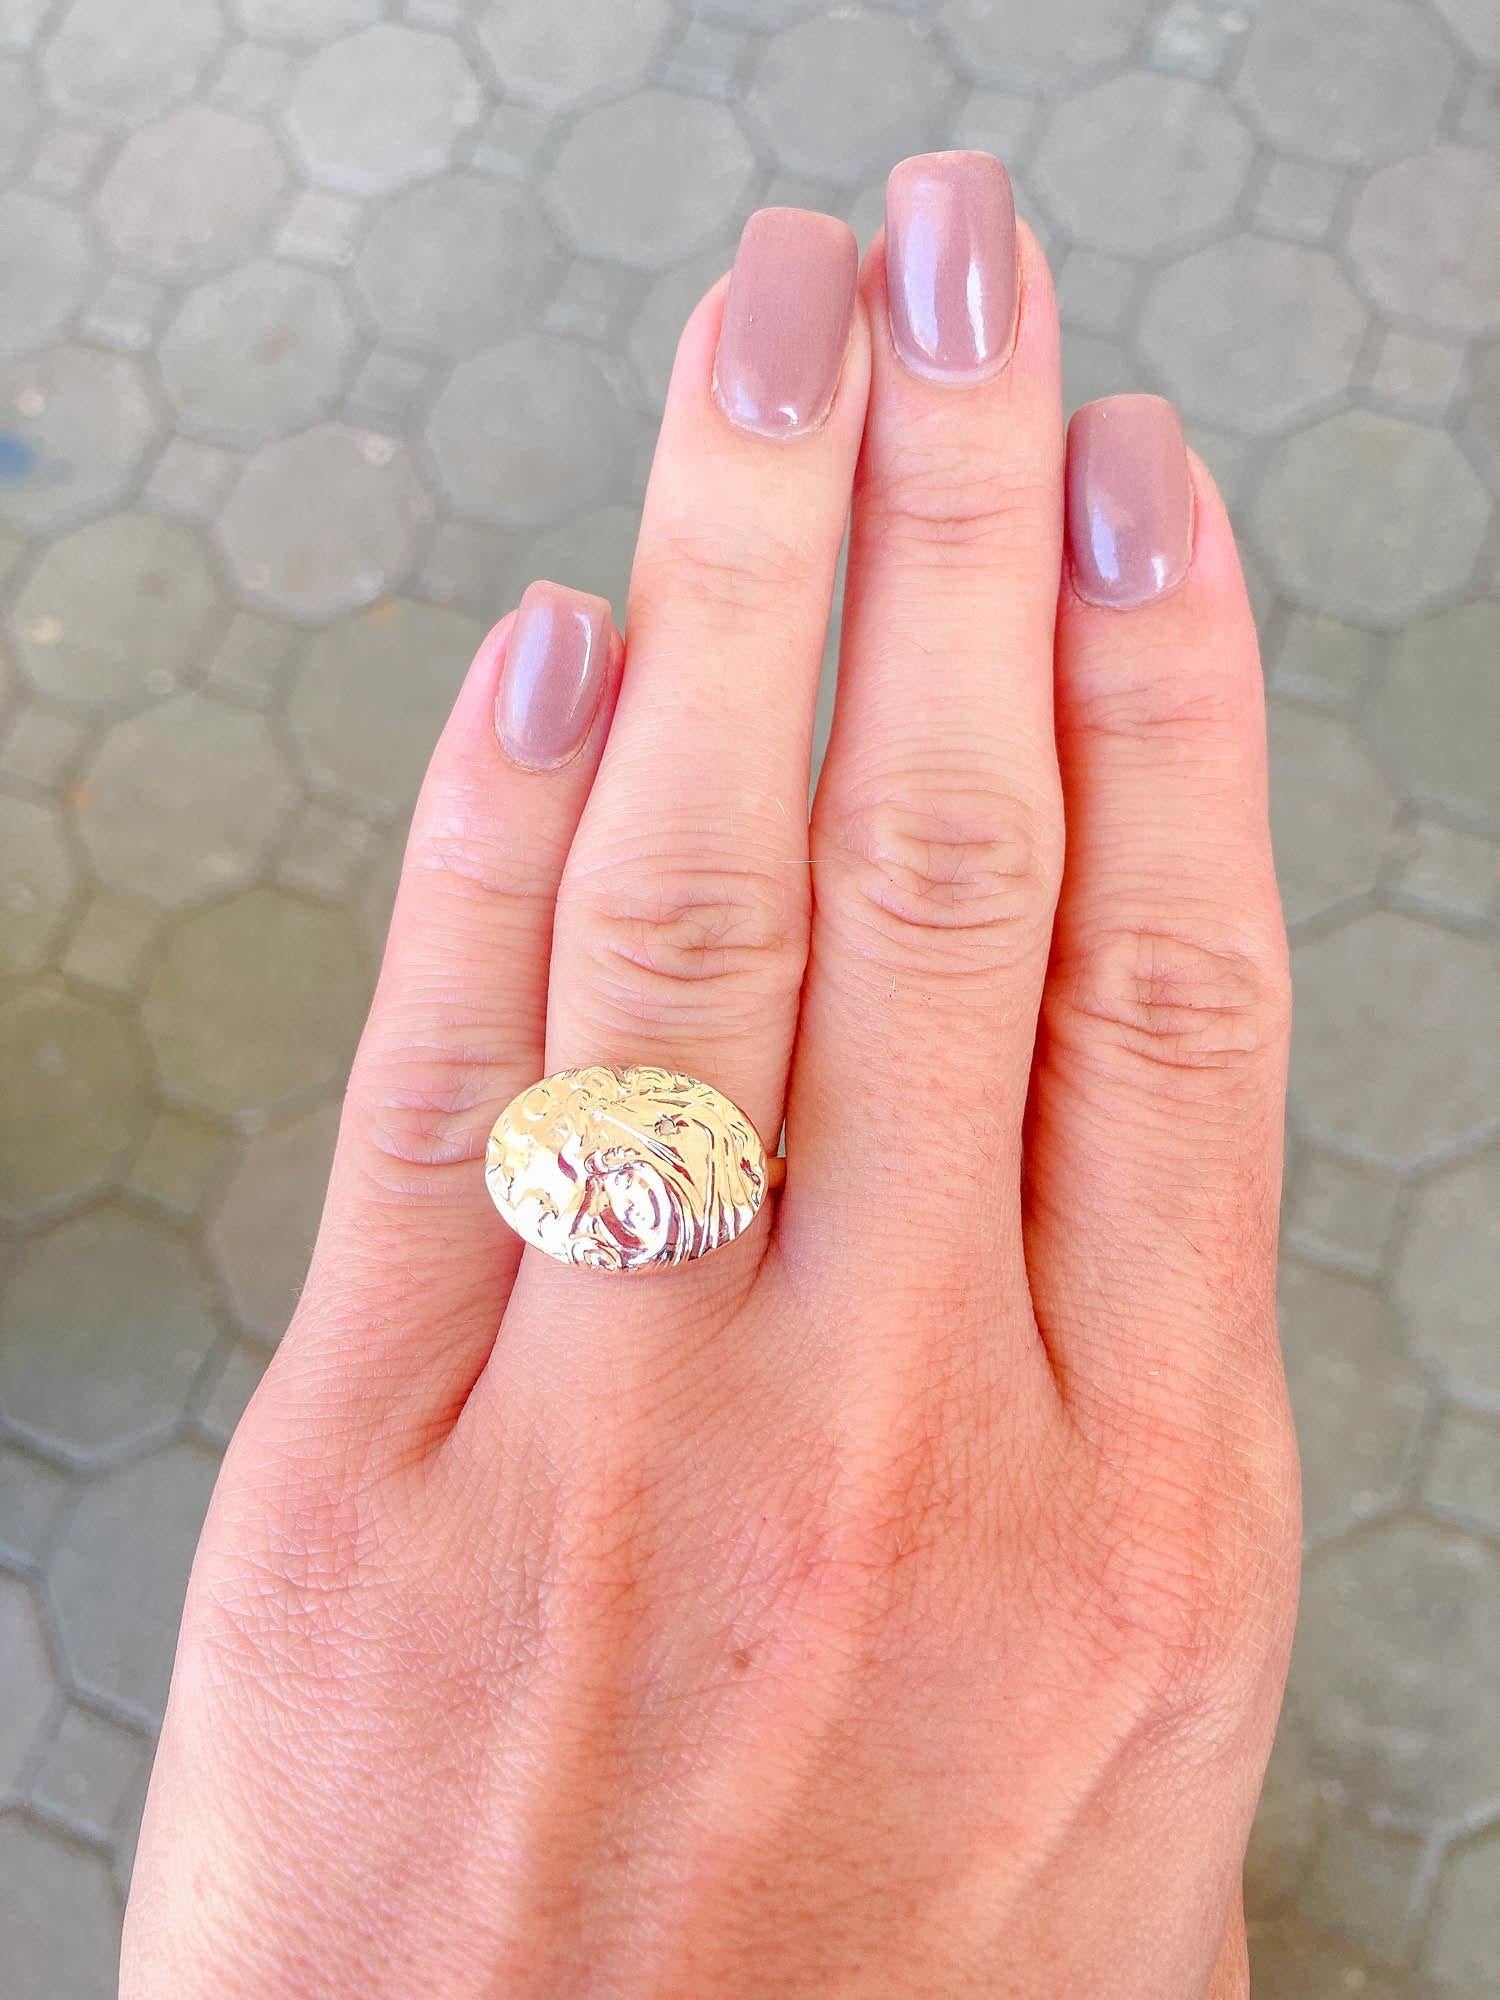 Victorian Art Nouveau Woman Face Diamond Repousse Ring 14K Yellow Gold R6280 For Sale 1